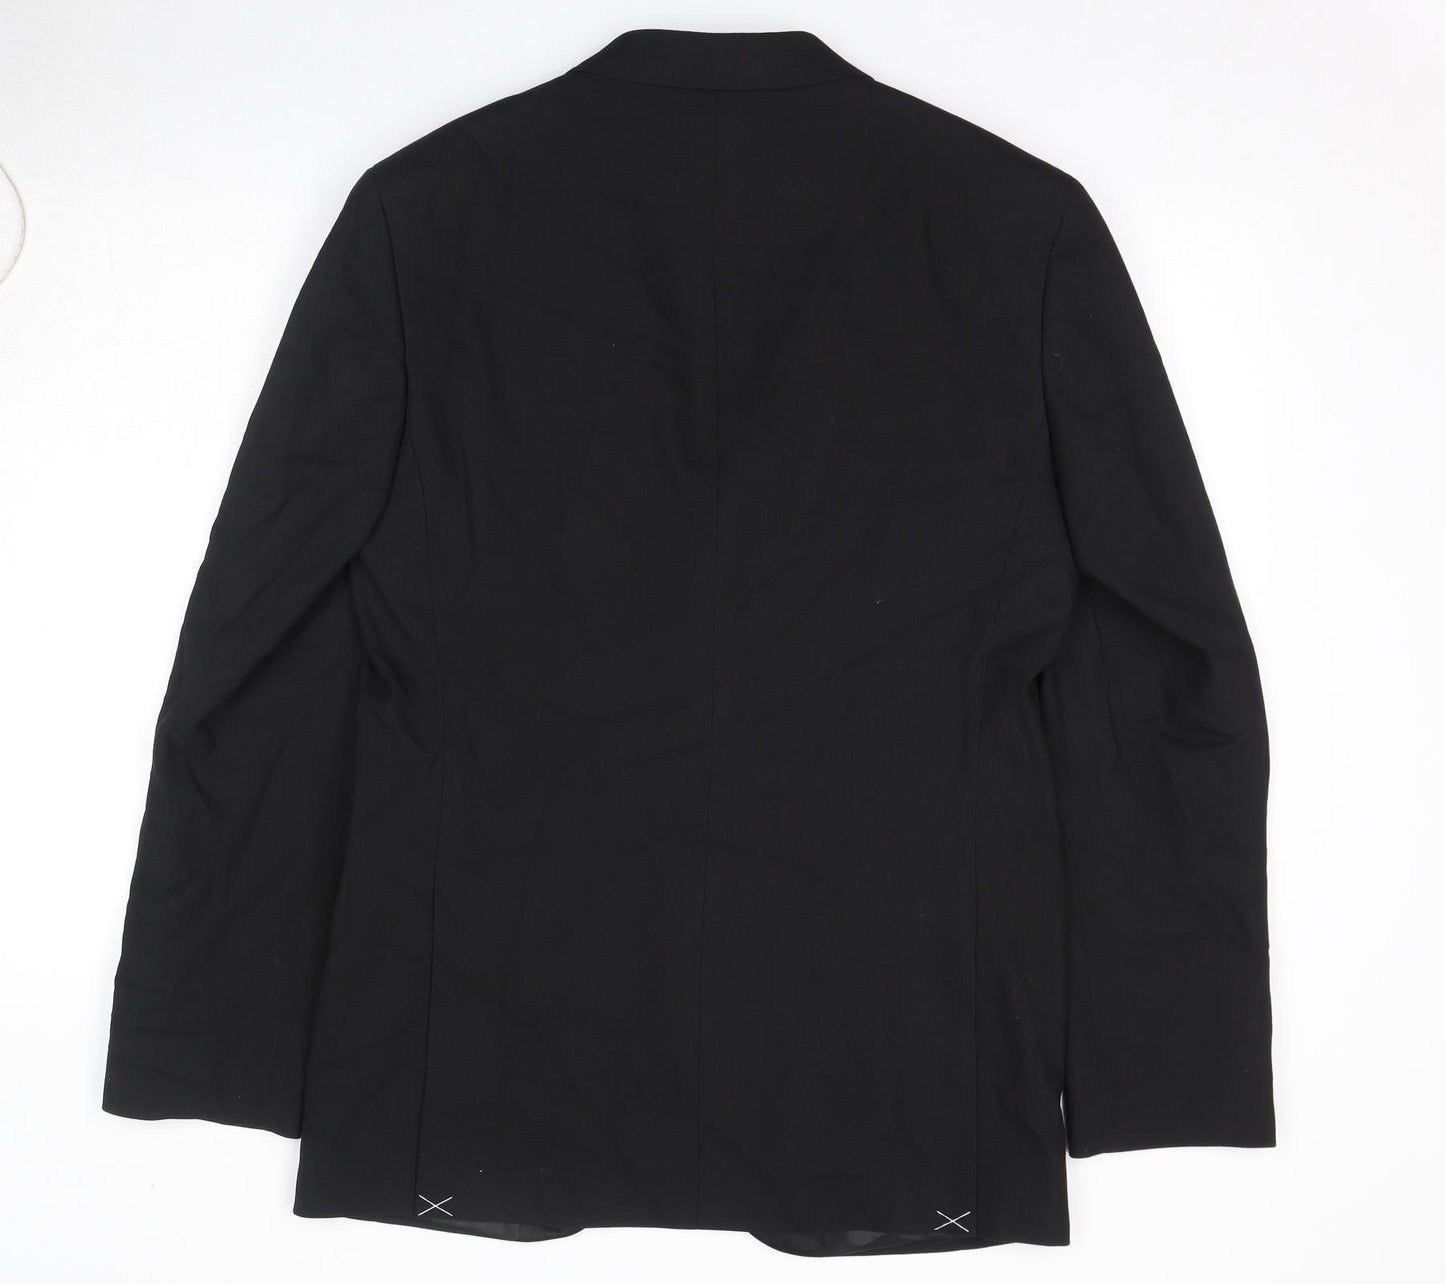 Marks and Spencer Mens Black Polyester Tuxedo Suit Jacket Size 38 Regular - Shoulder Pads